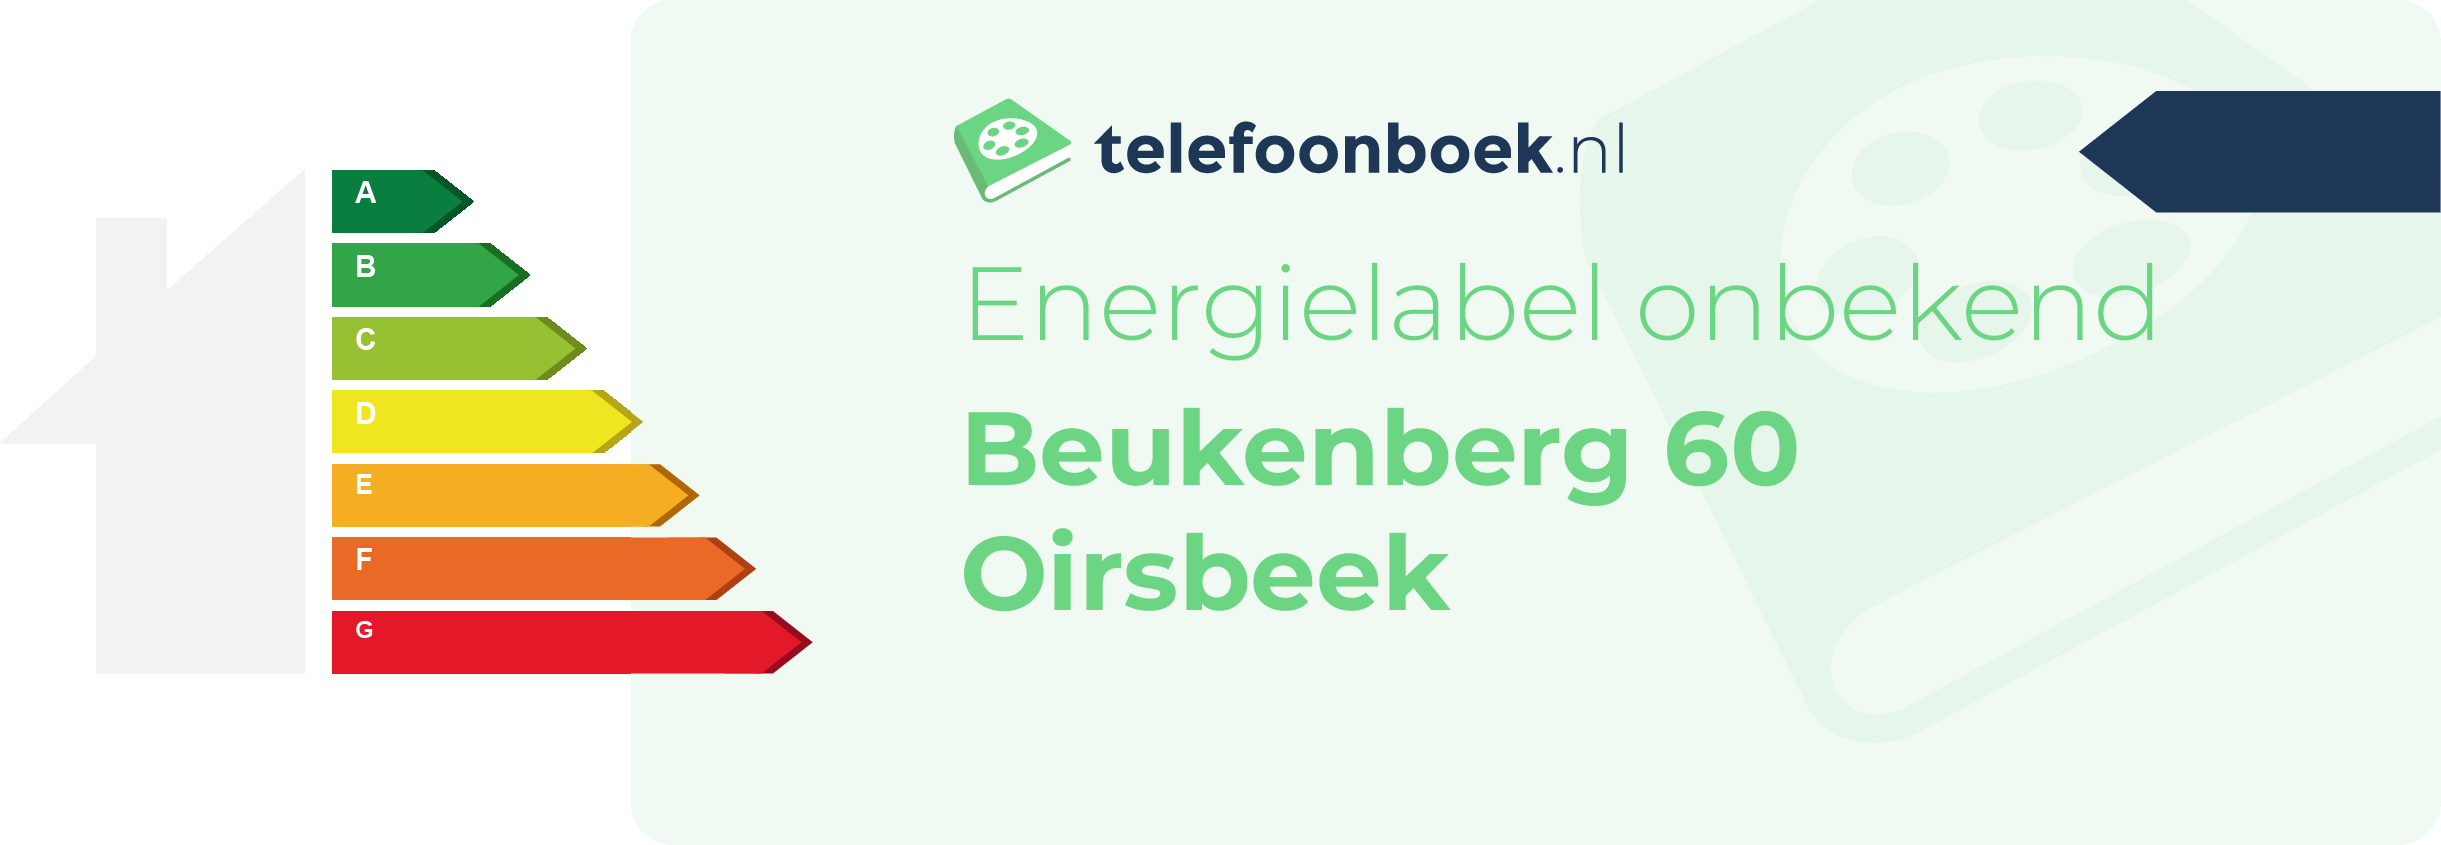 Energielabel Beukenberg 60 Oirsbeek